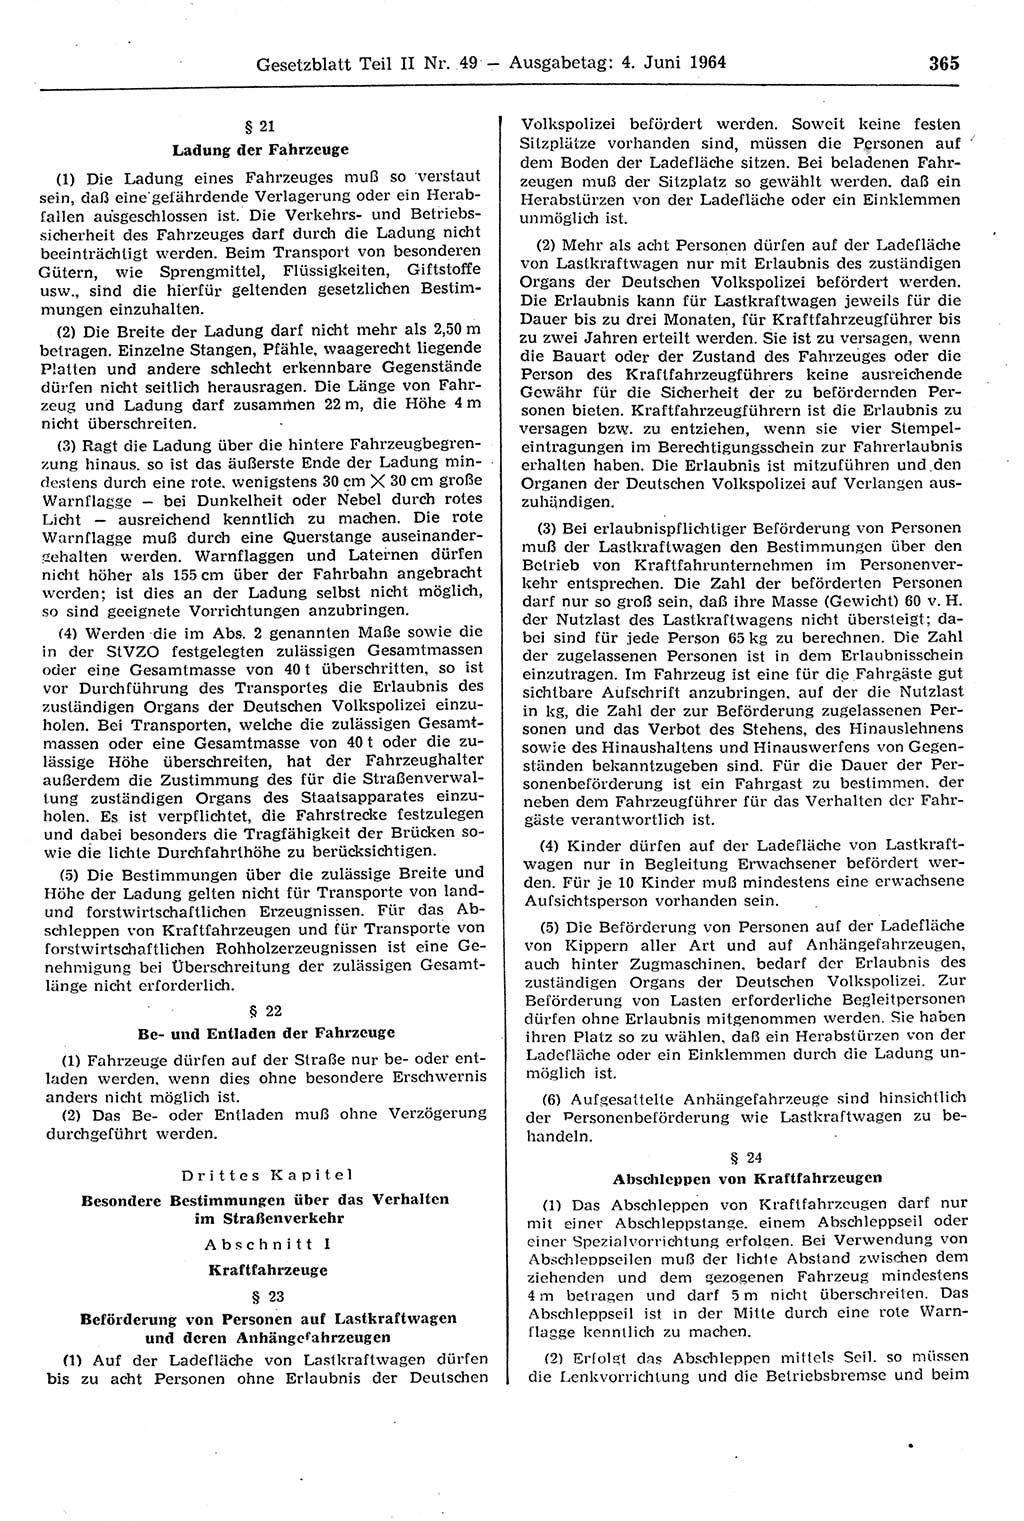 Gesetzblatt (GBl.) der Deutschen Demokratischen Republik (DDR) Teil ⅠⅠ 1964, Seite 365 (GBl. DDR ⅠⅠ 1964, S. 365)